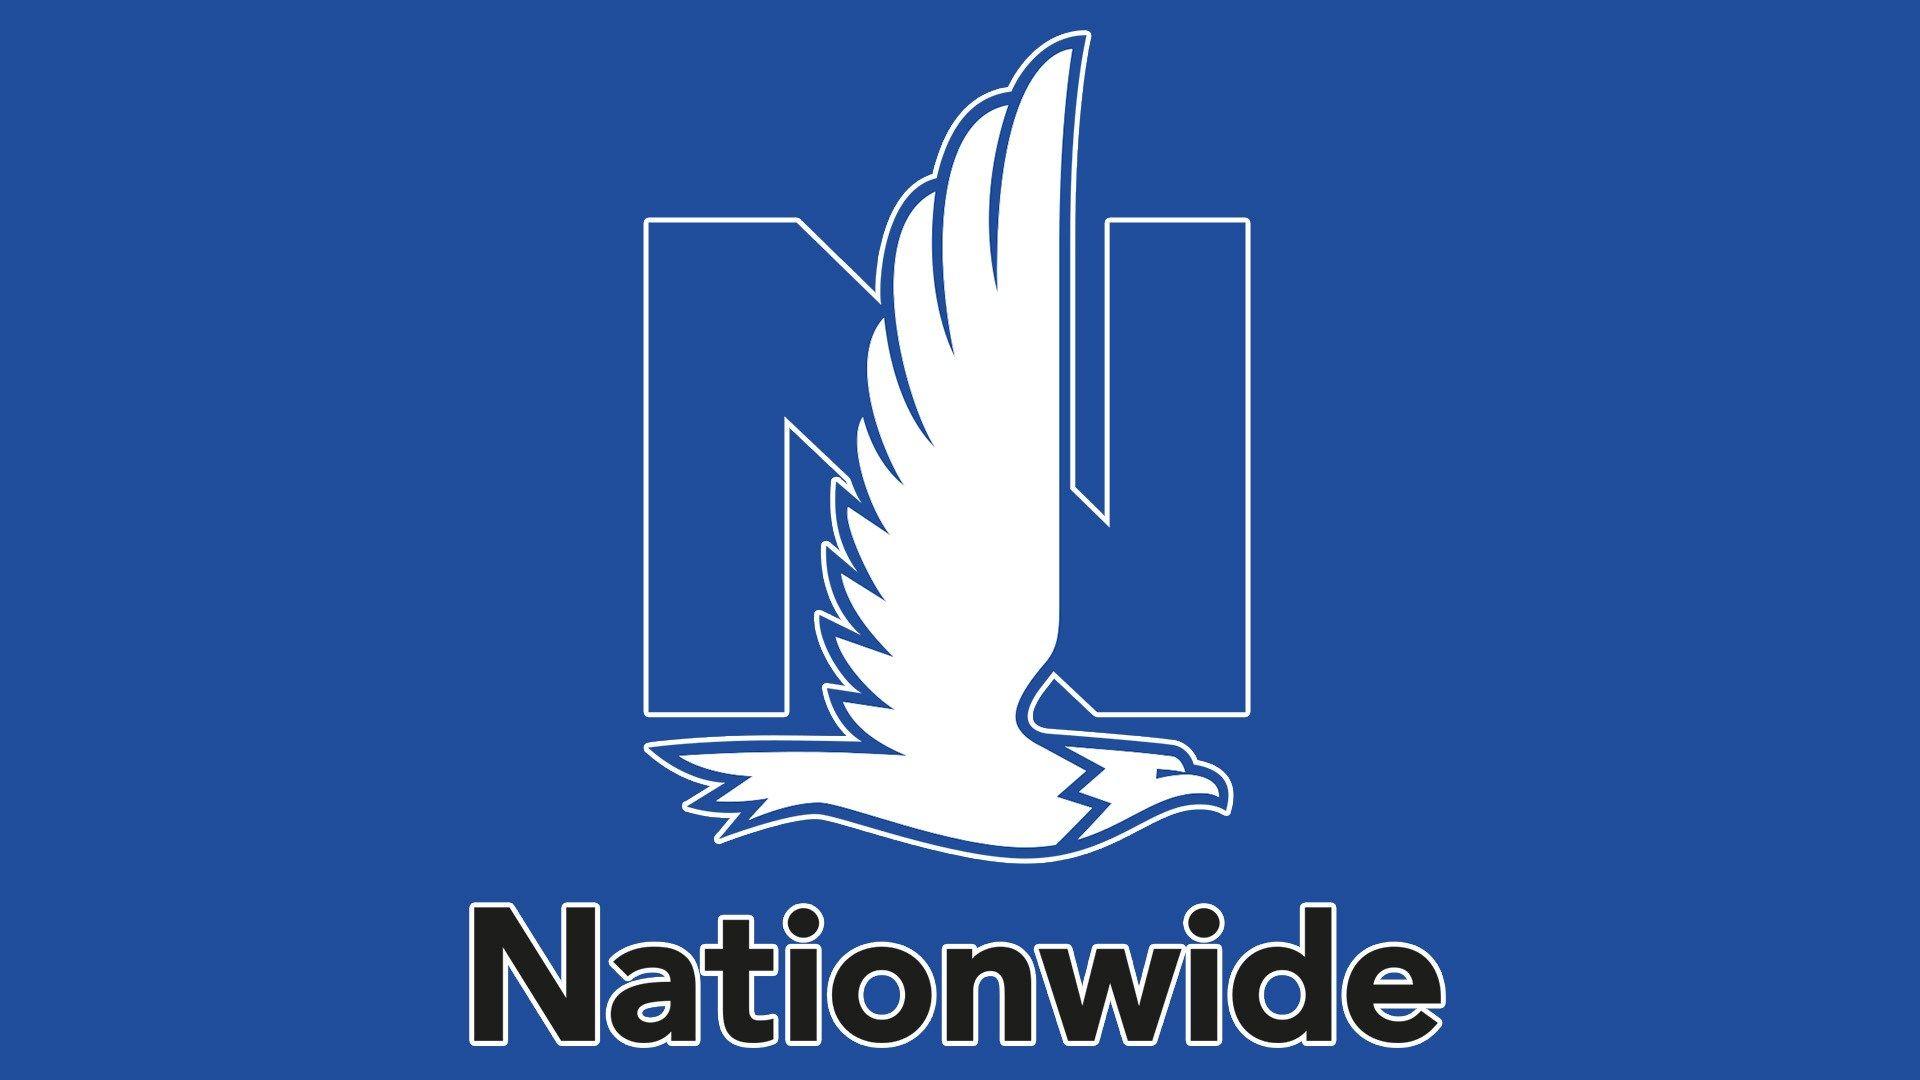 Nationwide Eagle Logo - Nationwide Eagle Logo Plain